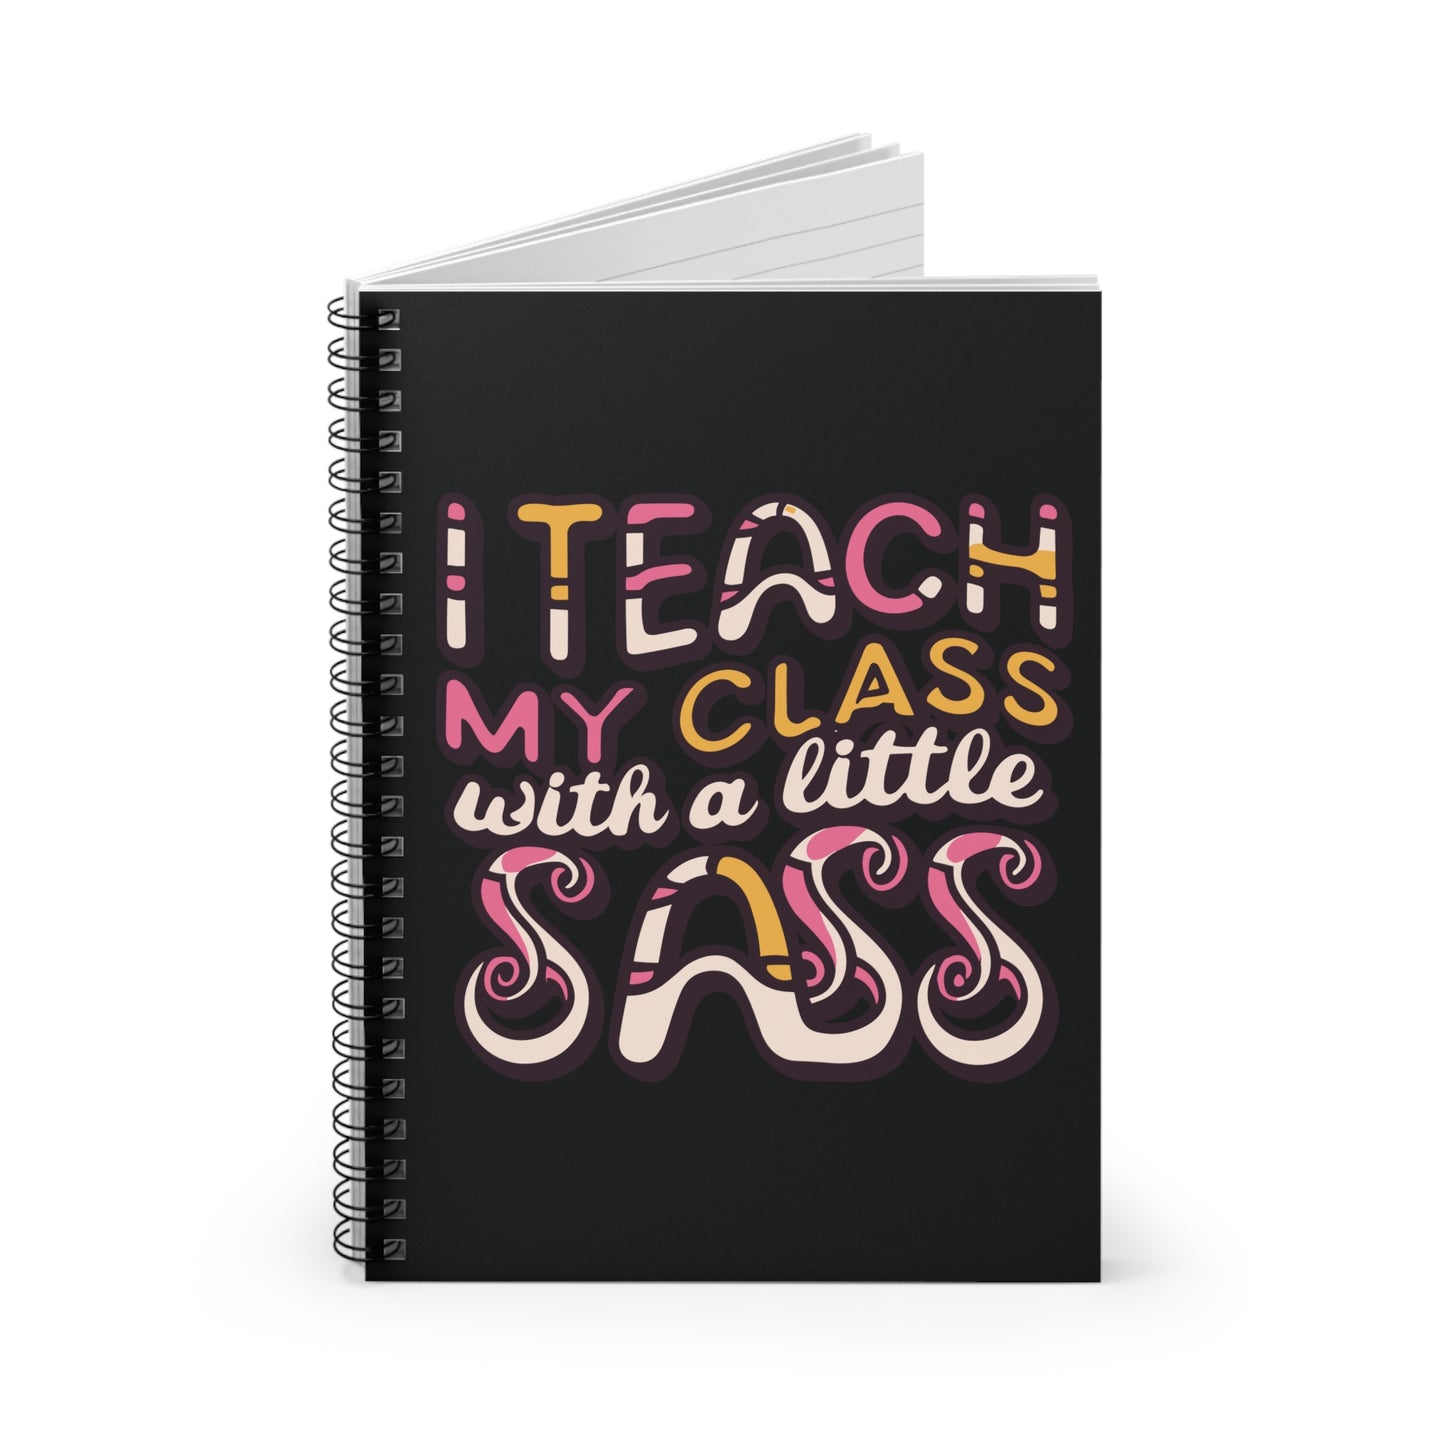 Teacher Spiral Notebook - "I Teach My Class with a Little Sass"